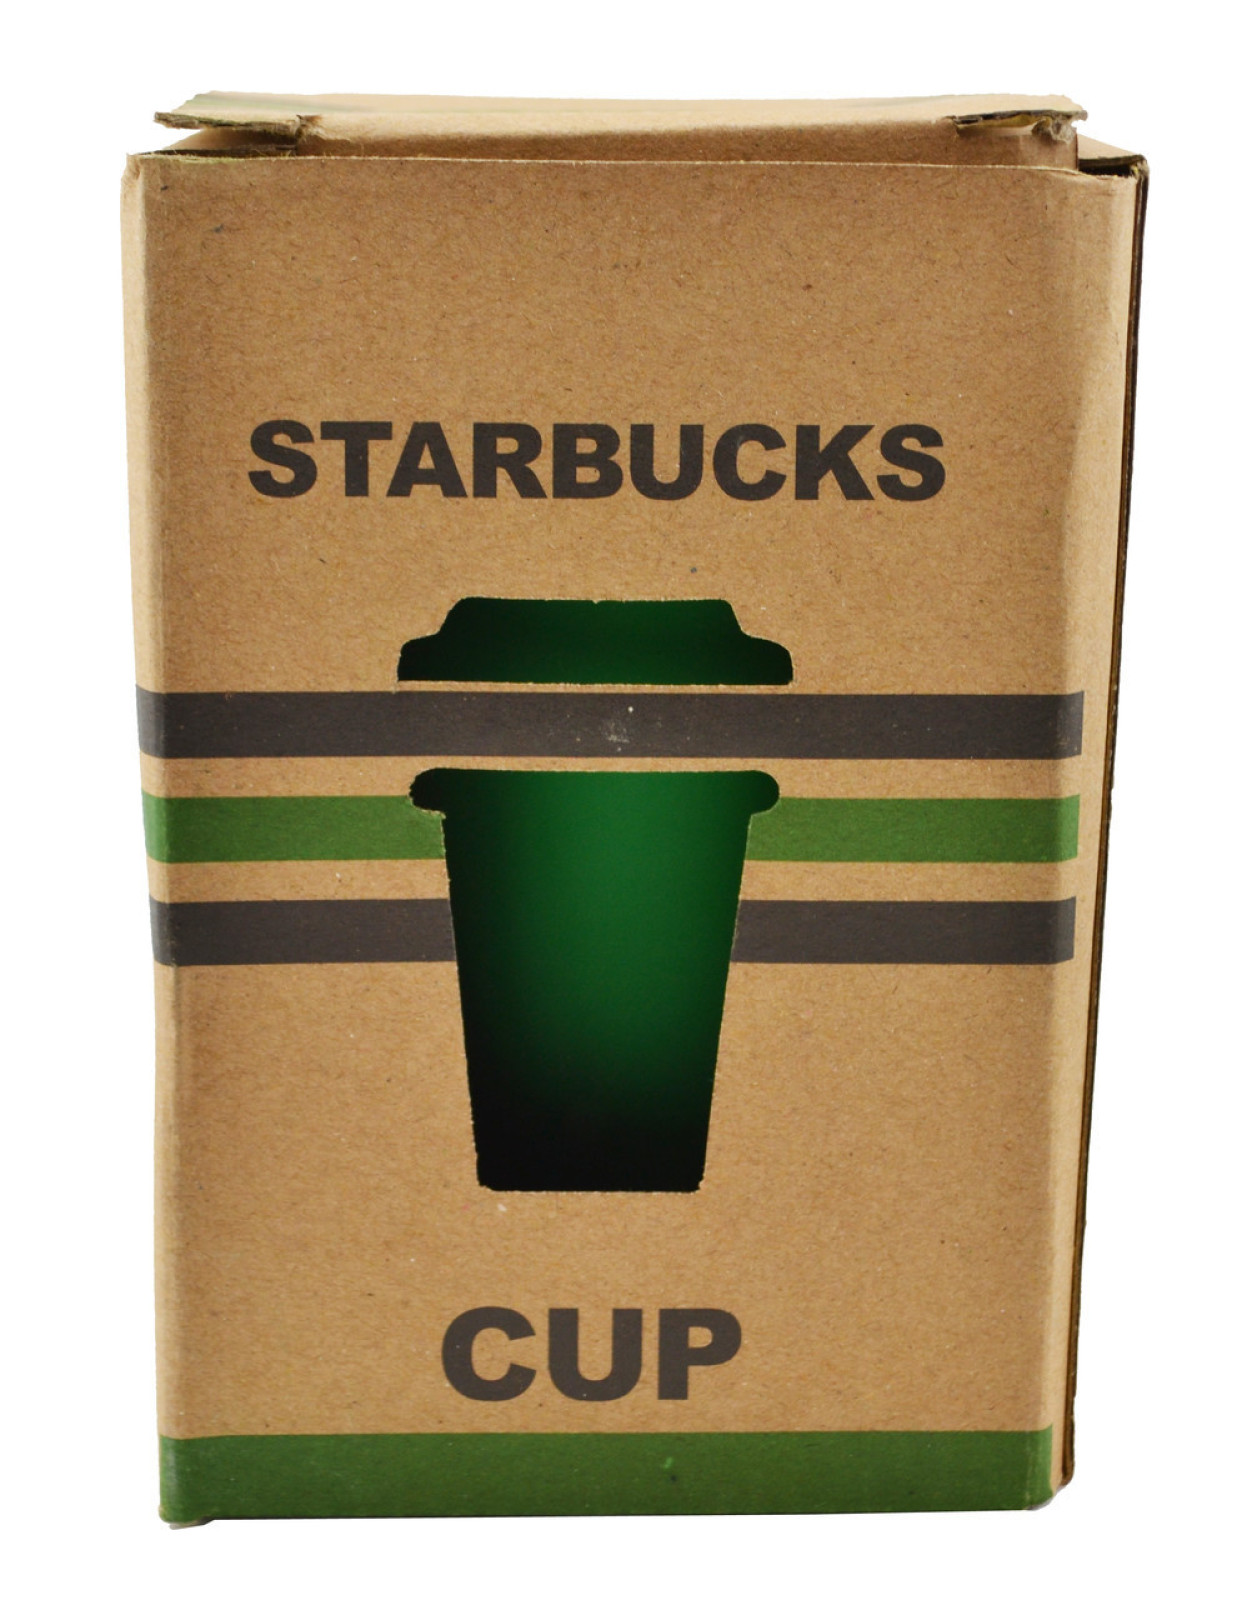 Керамический стакан Starbucks PY 023 Good Idea 350 мл Зеленый 183139